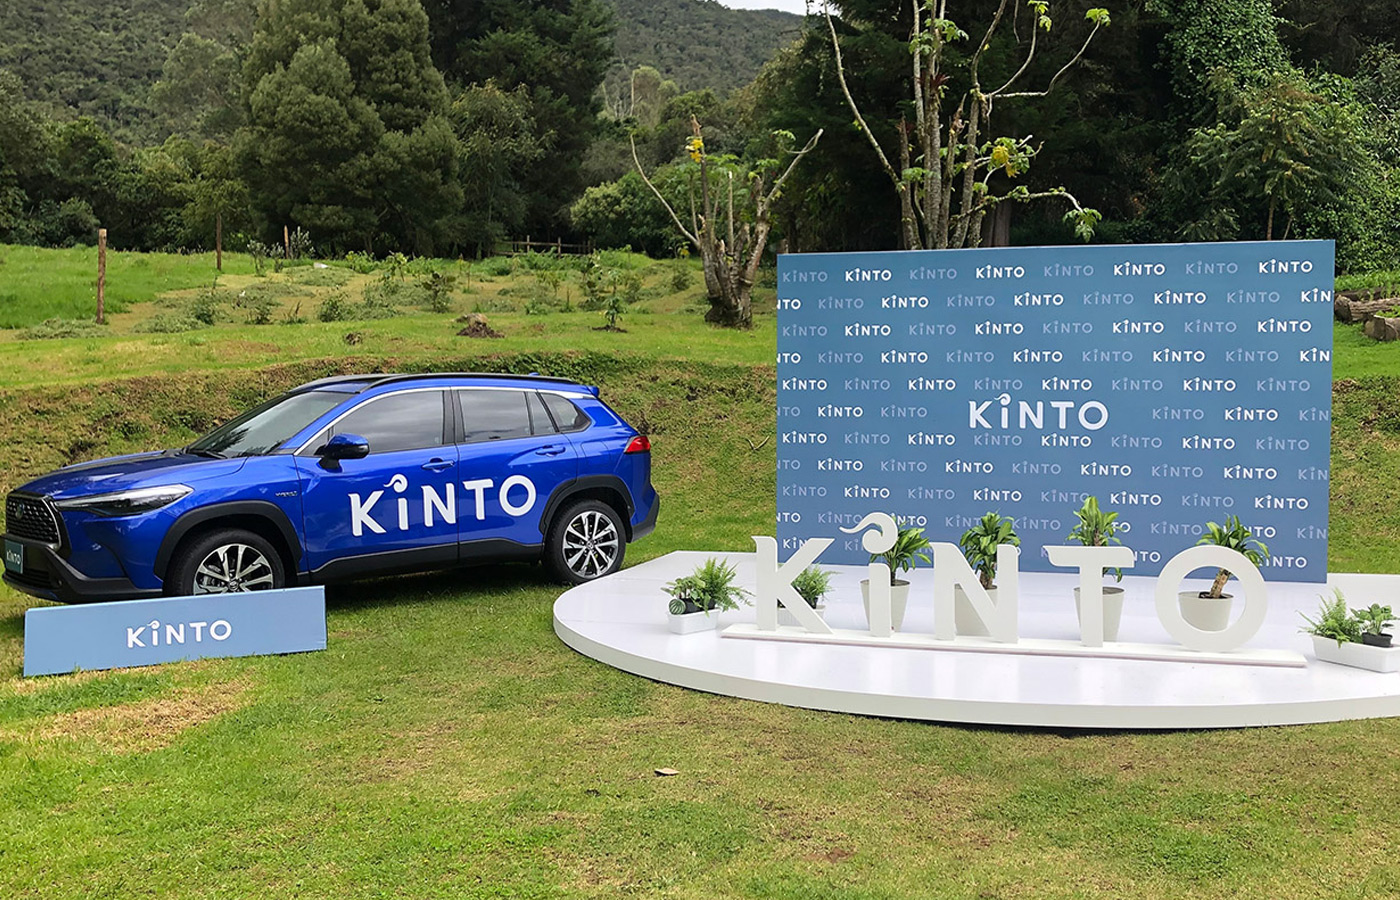 Toyota presenta Kinto, su nueva aplicación de servicios de movilidad que permite alquilar vehículos durante periodos de horas, días o meses.